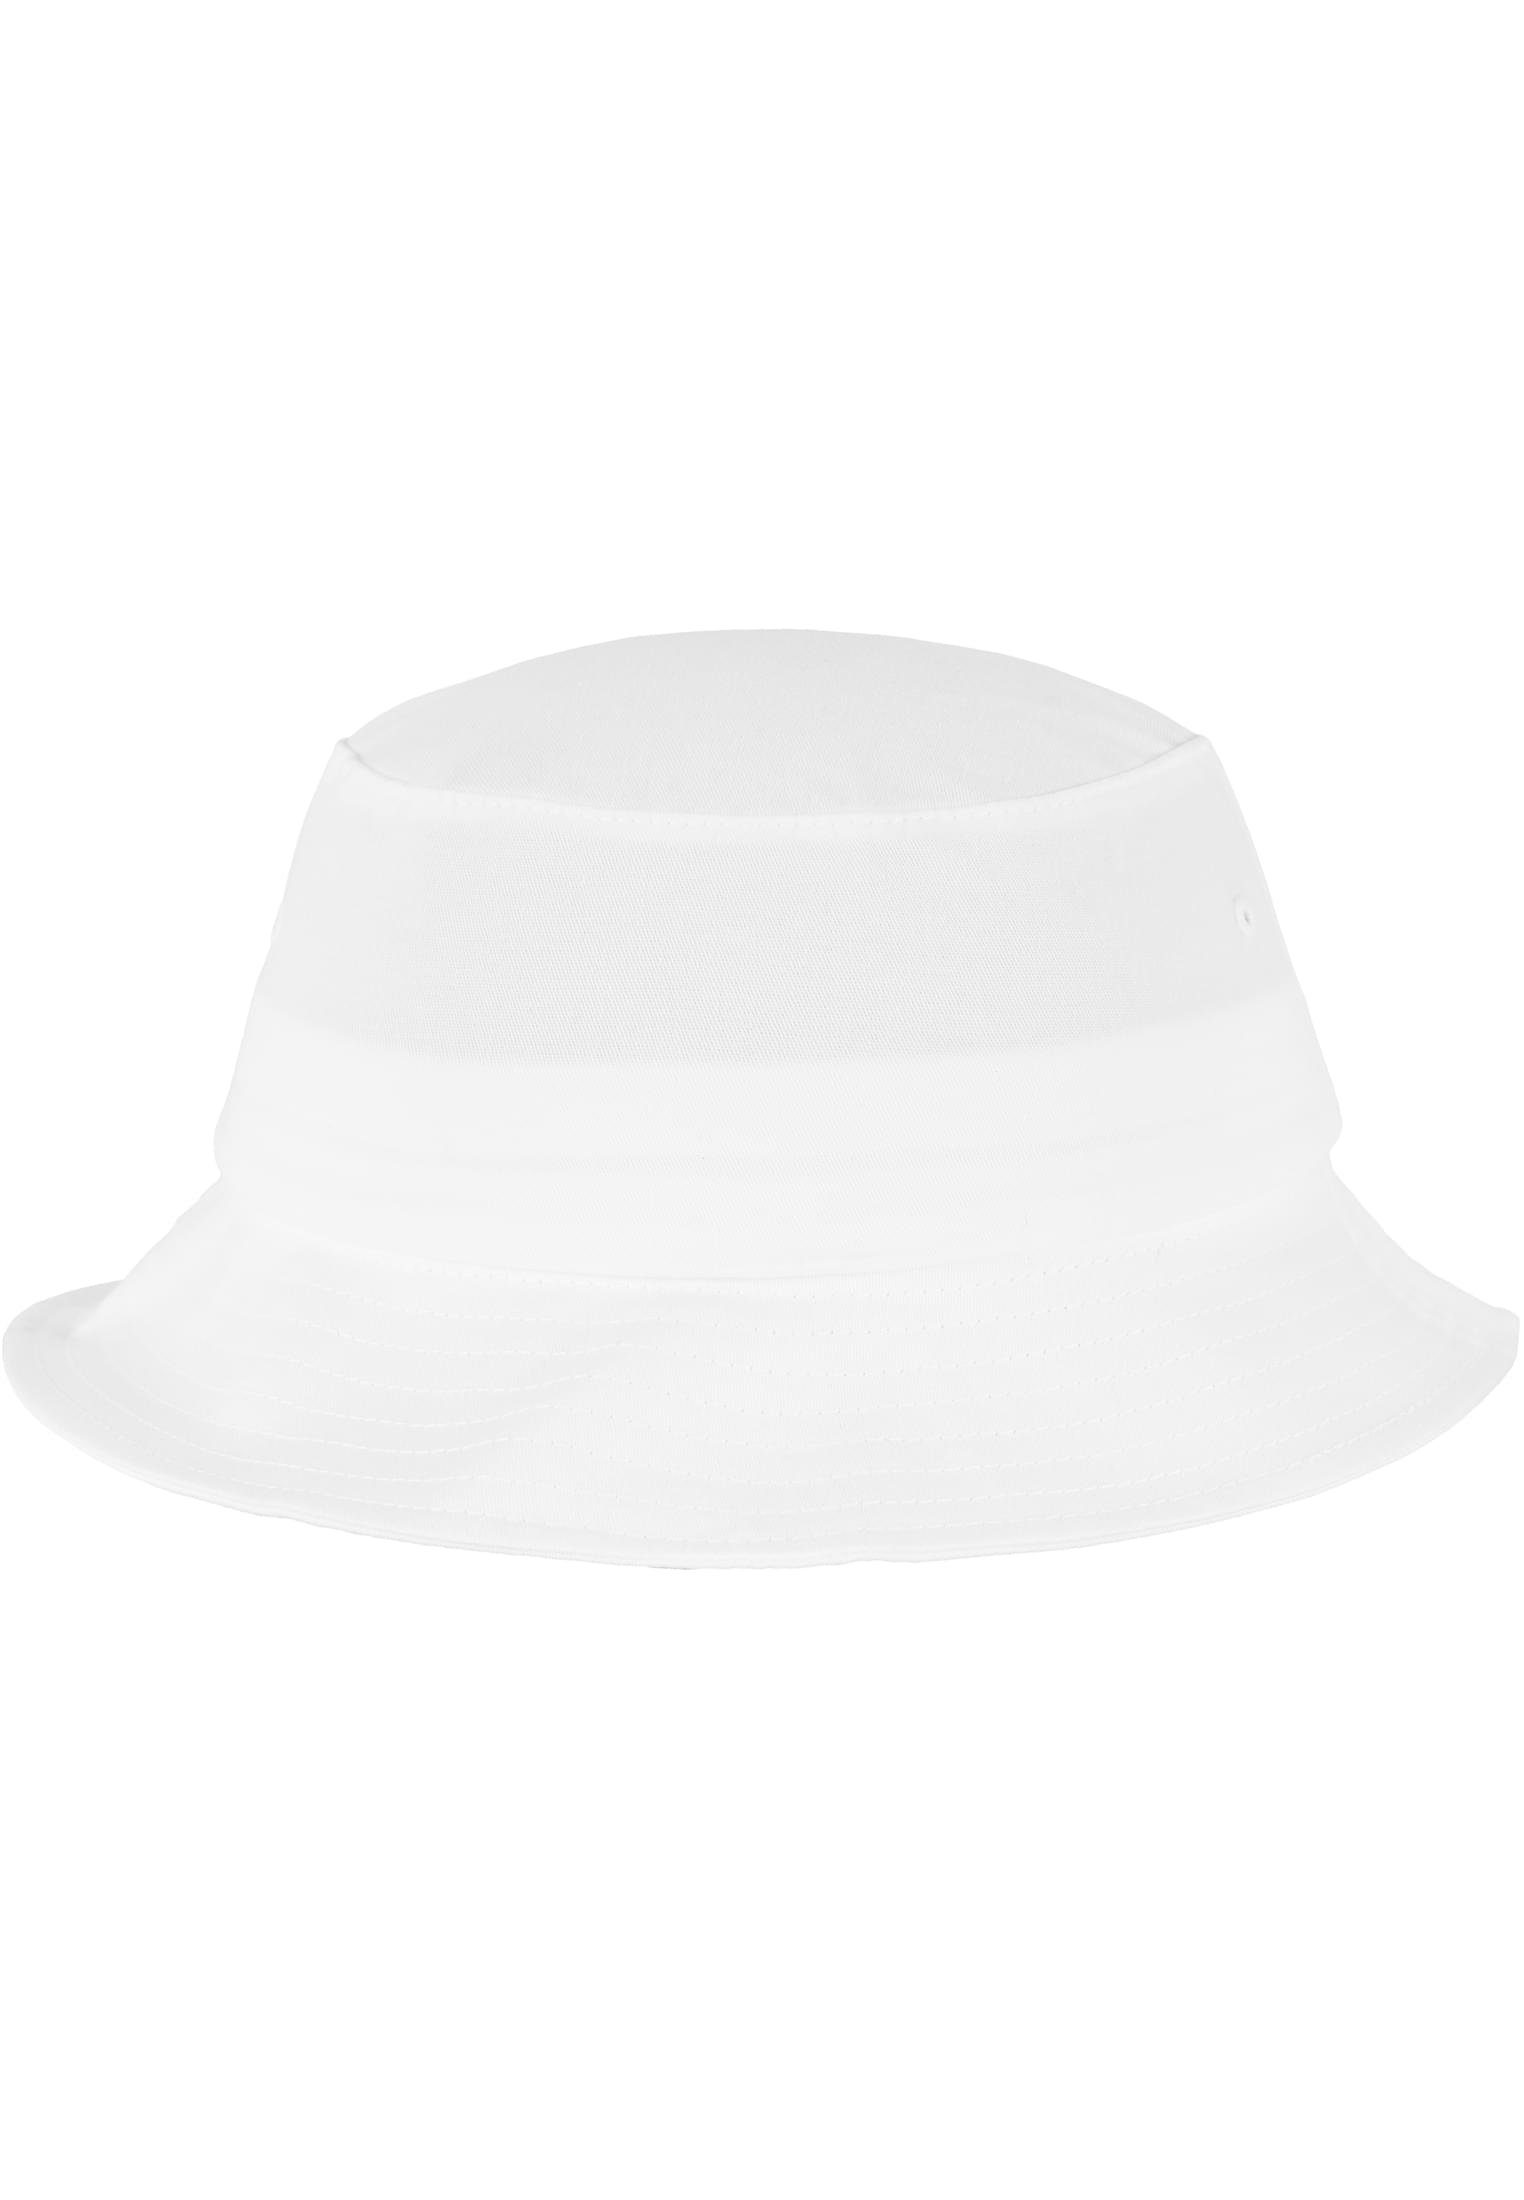 Cap Accessoires Bucket Hat white Flexfit Flexfit Twill Flex Cotton